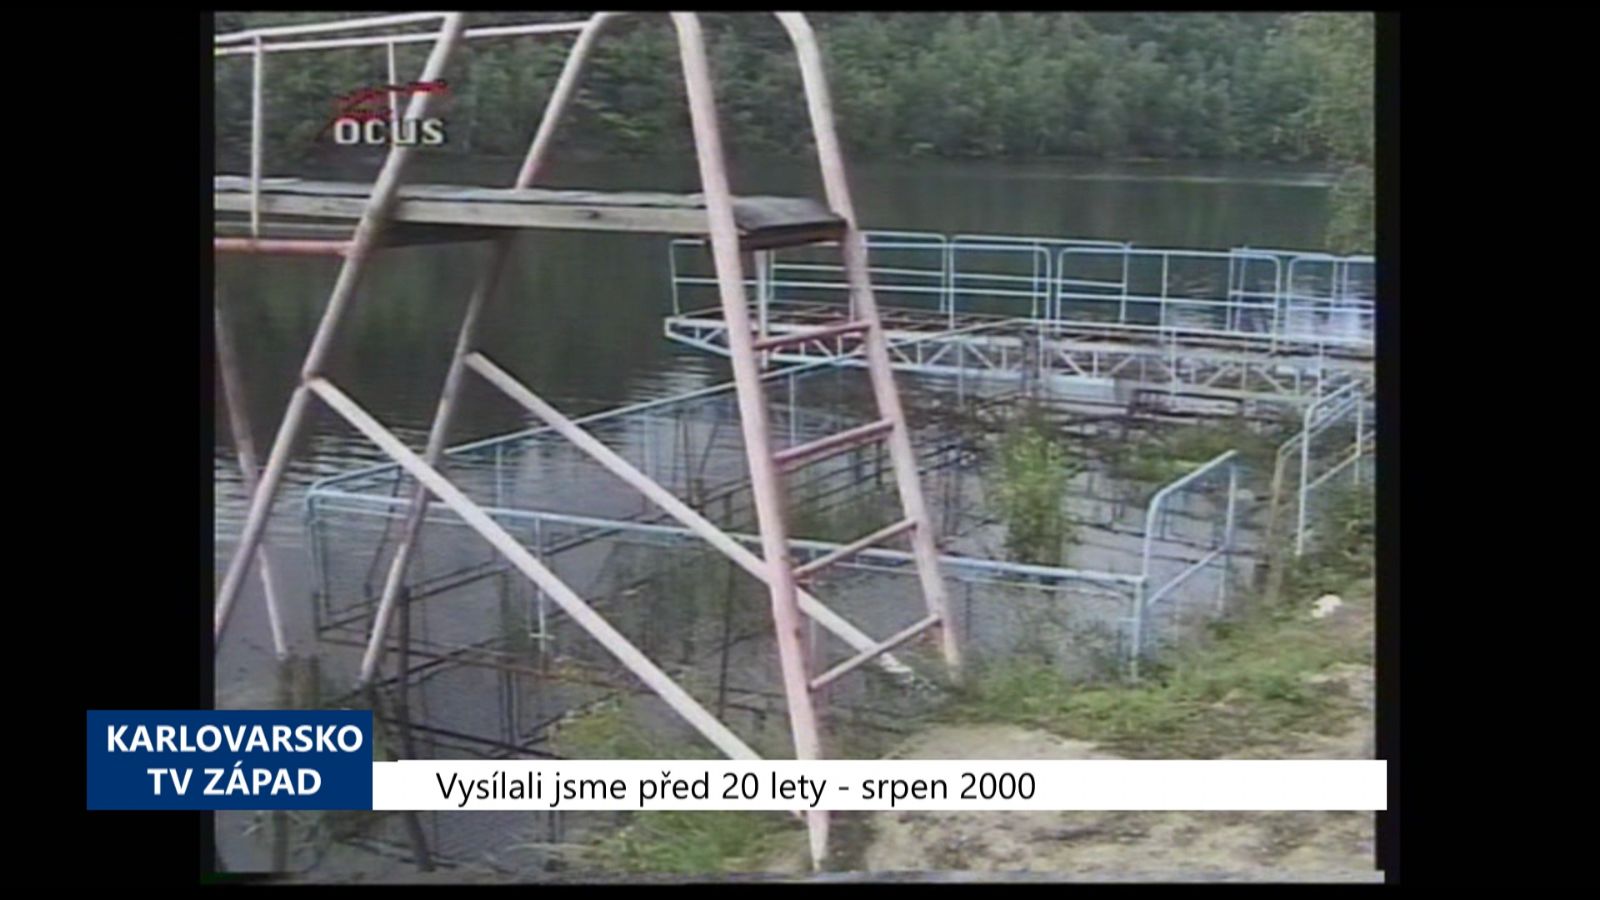 2000 – Cheb: Zdevastovaný areál plovárny na Skalce opět ožije (TV Západ)